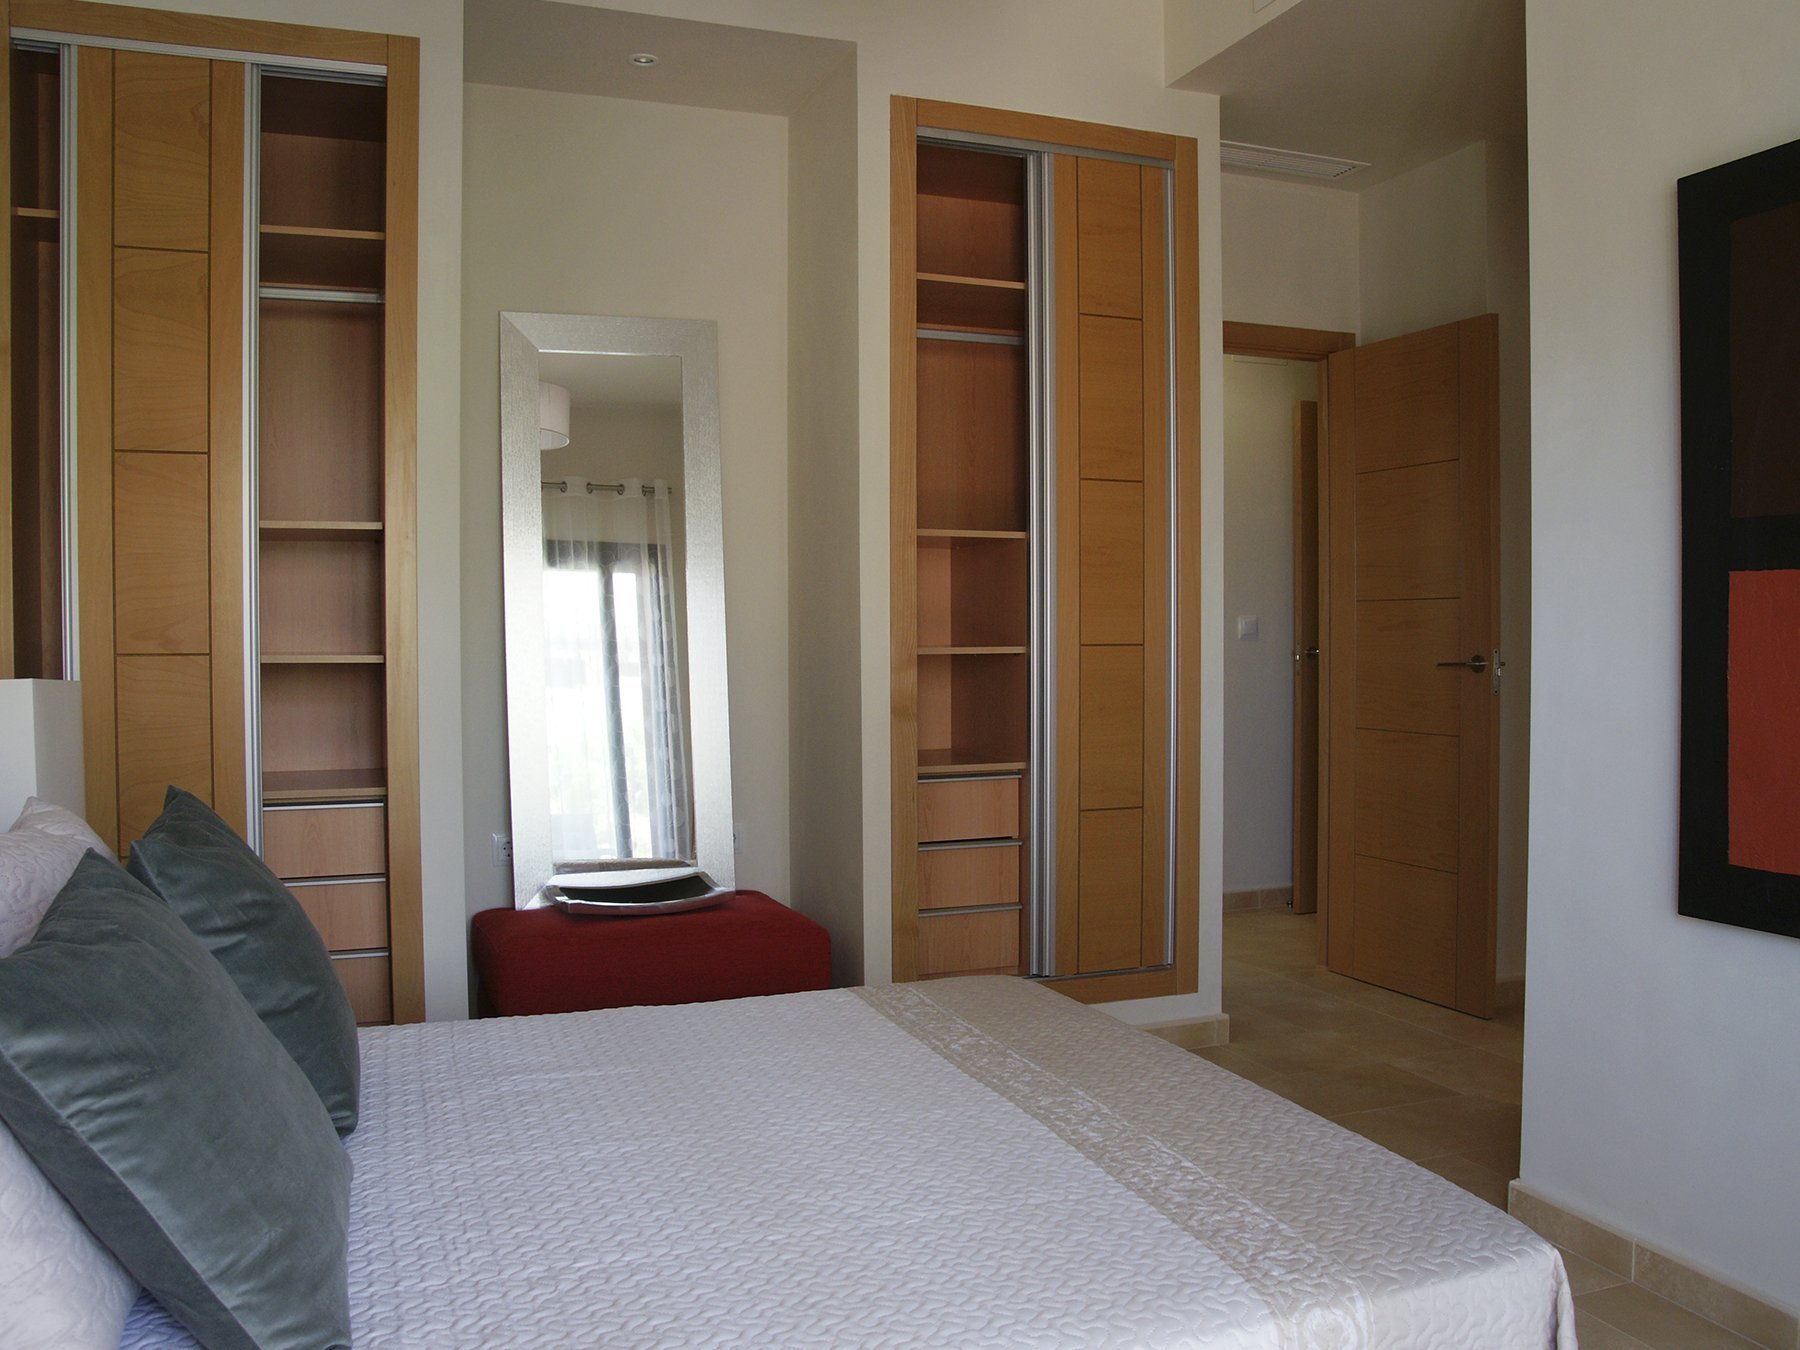 Apartamento en venta en Fuente Alamo, Murcia